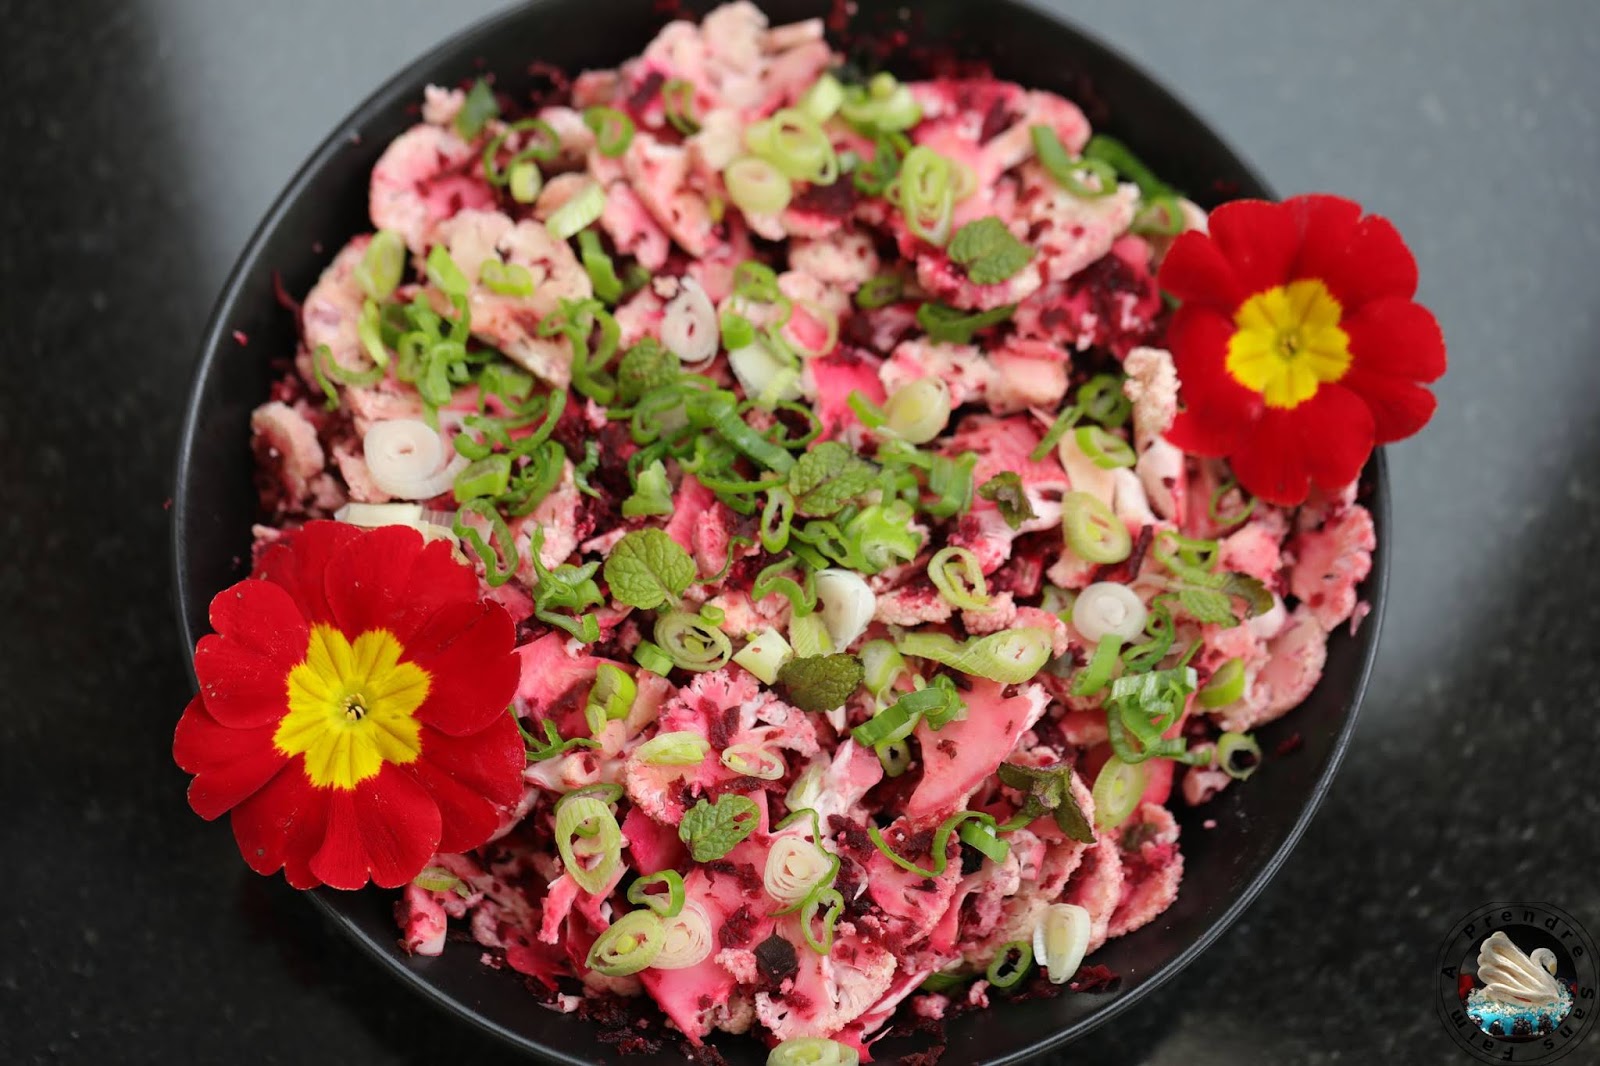 Salade healthy au chou-fleur